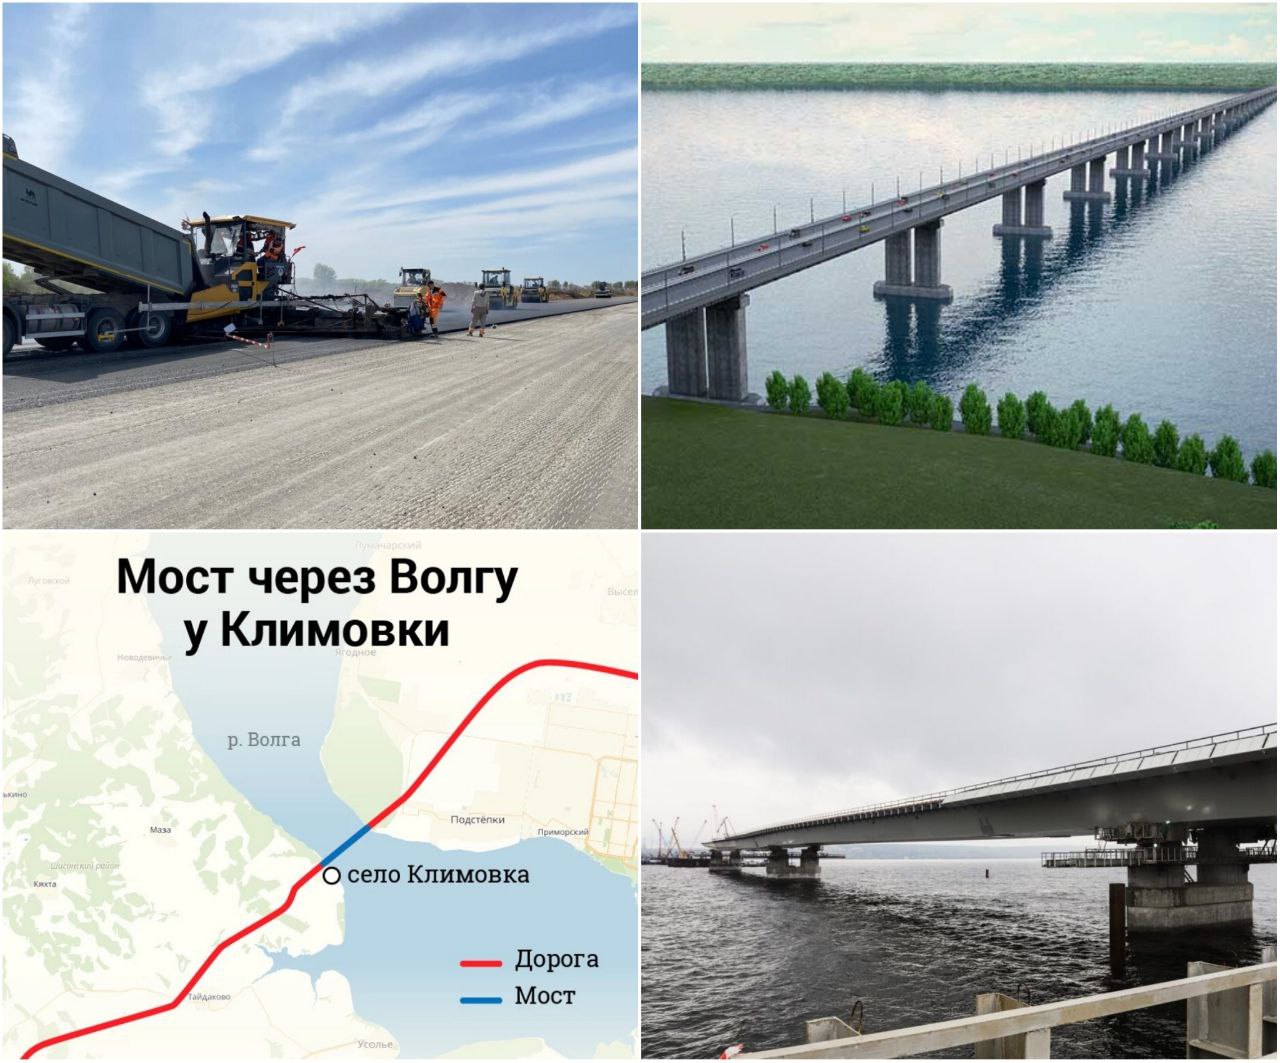 Мост через Волгу в обход Тольятти